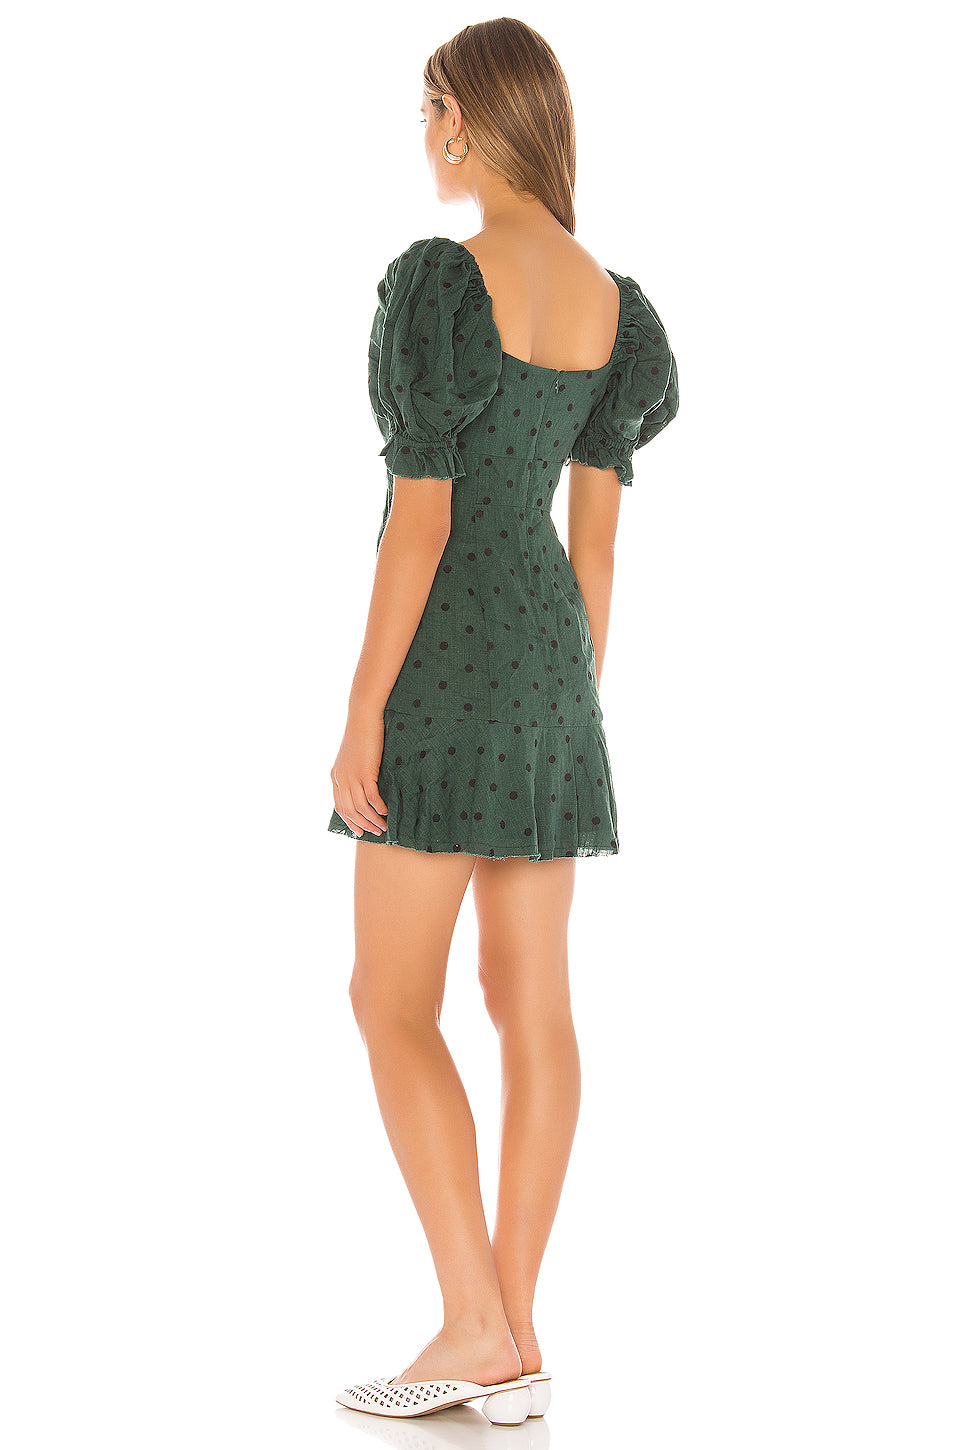 Evie Dress in DEEP KELLY GREEN